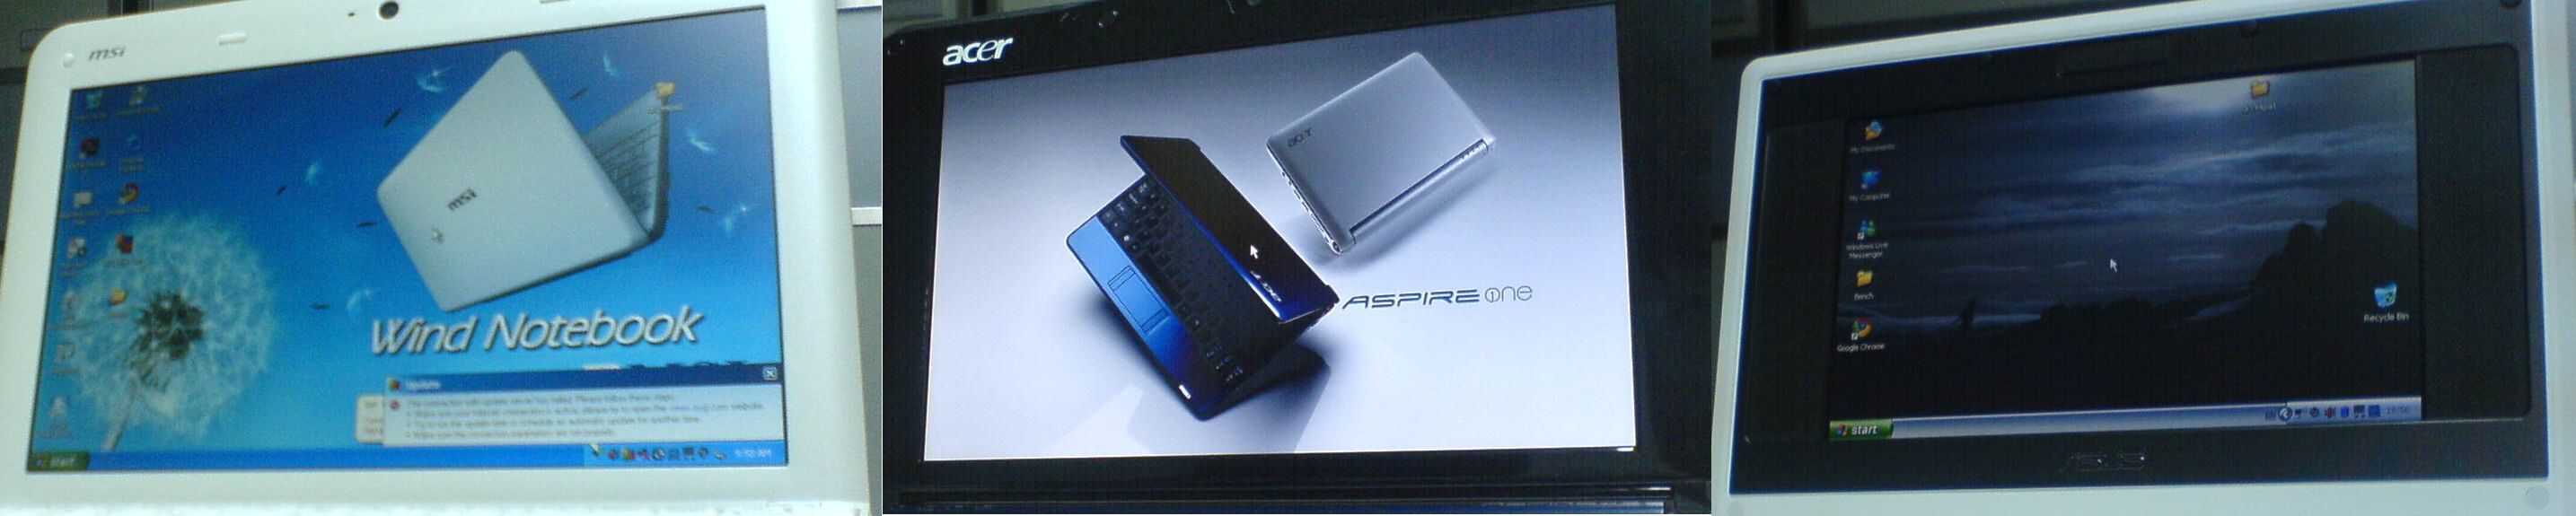 Acer Aspire One MSI Wind U100 Asus Eee PC Displays